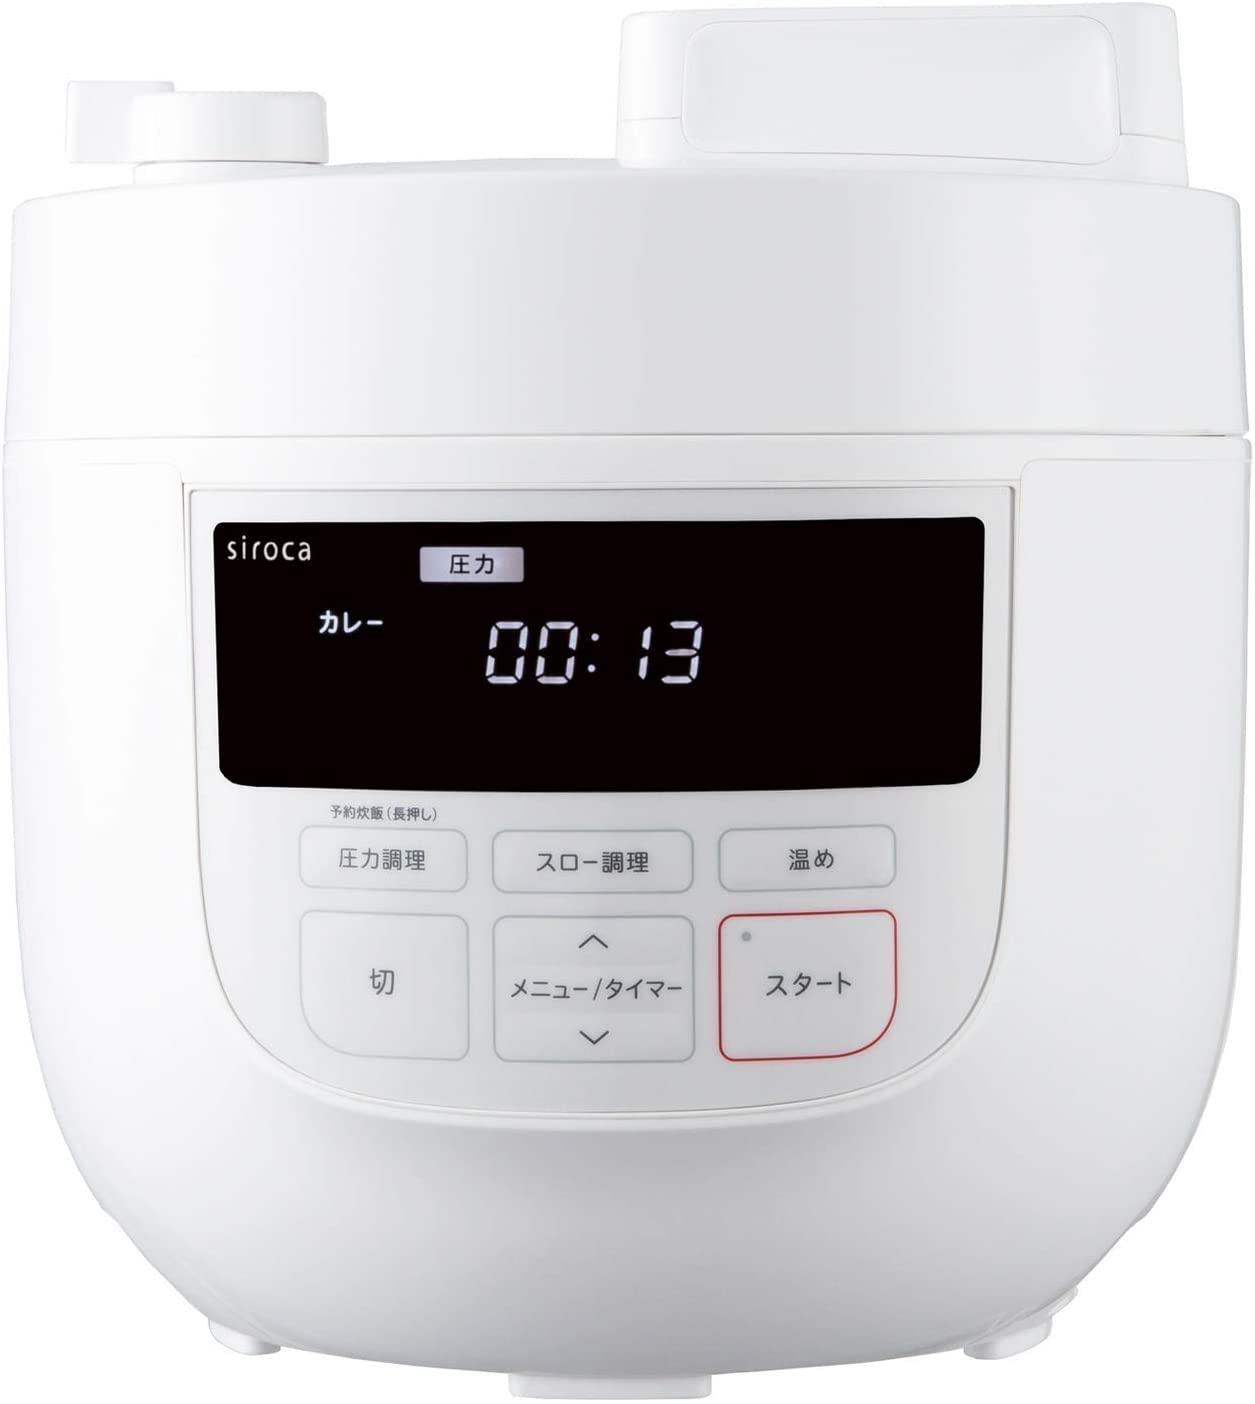 siroca(シロカ) 電気圧力鍋 SP-4D151